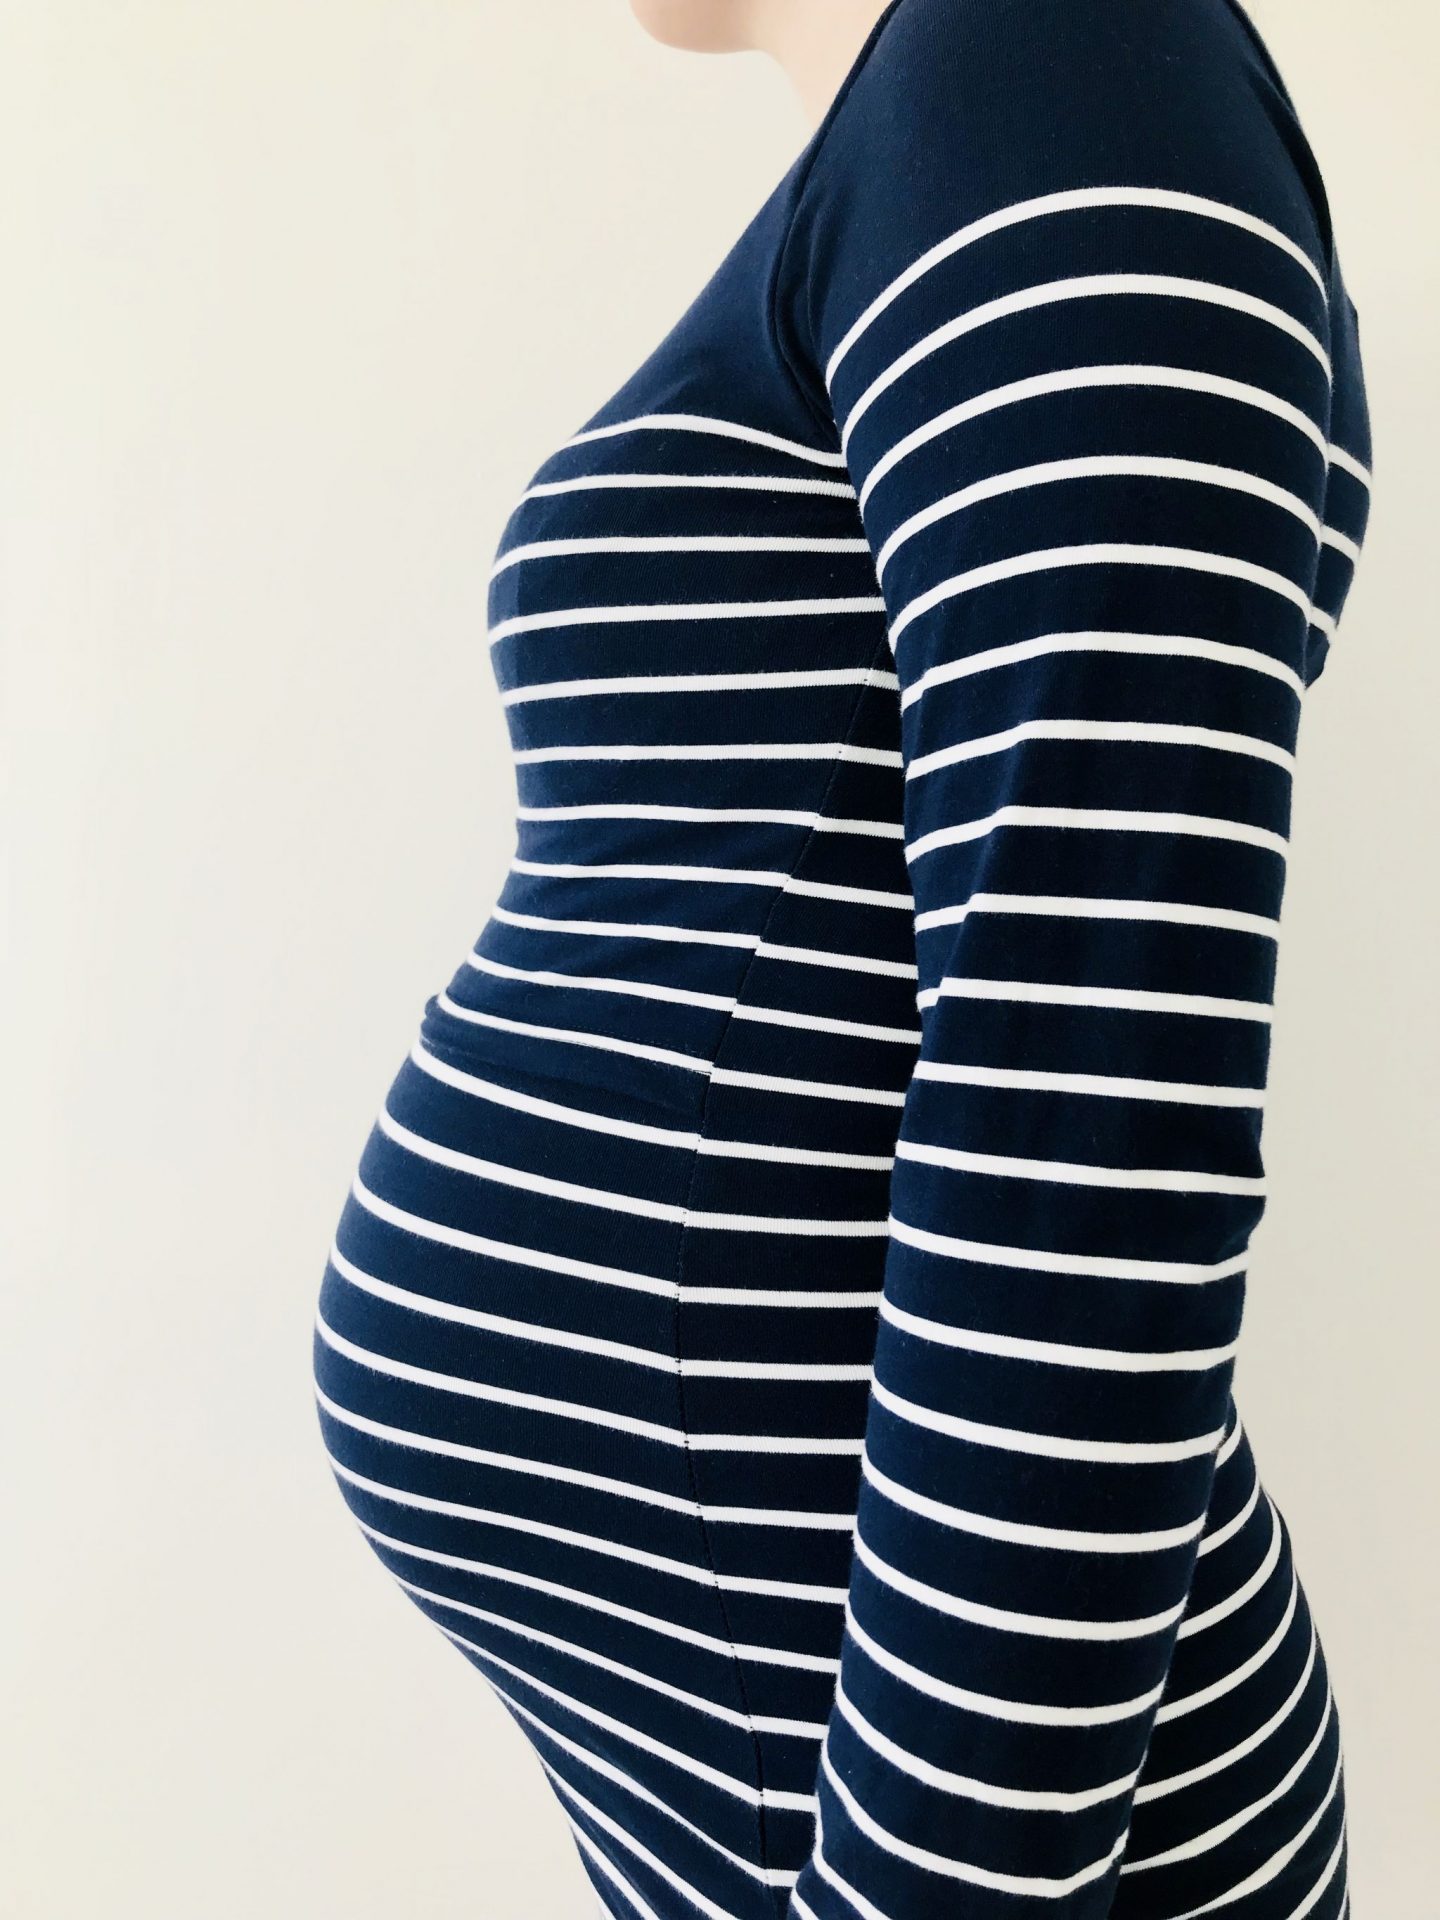 30 week pregnancy update and bumpie